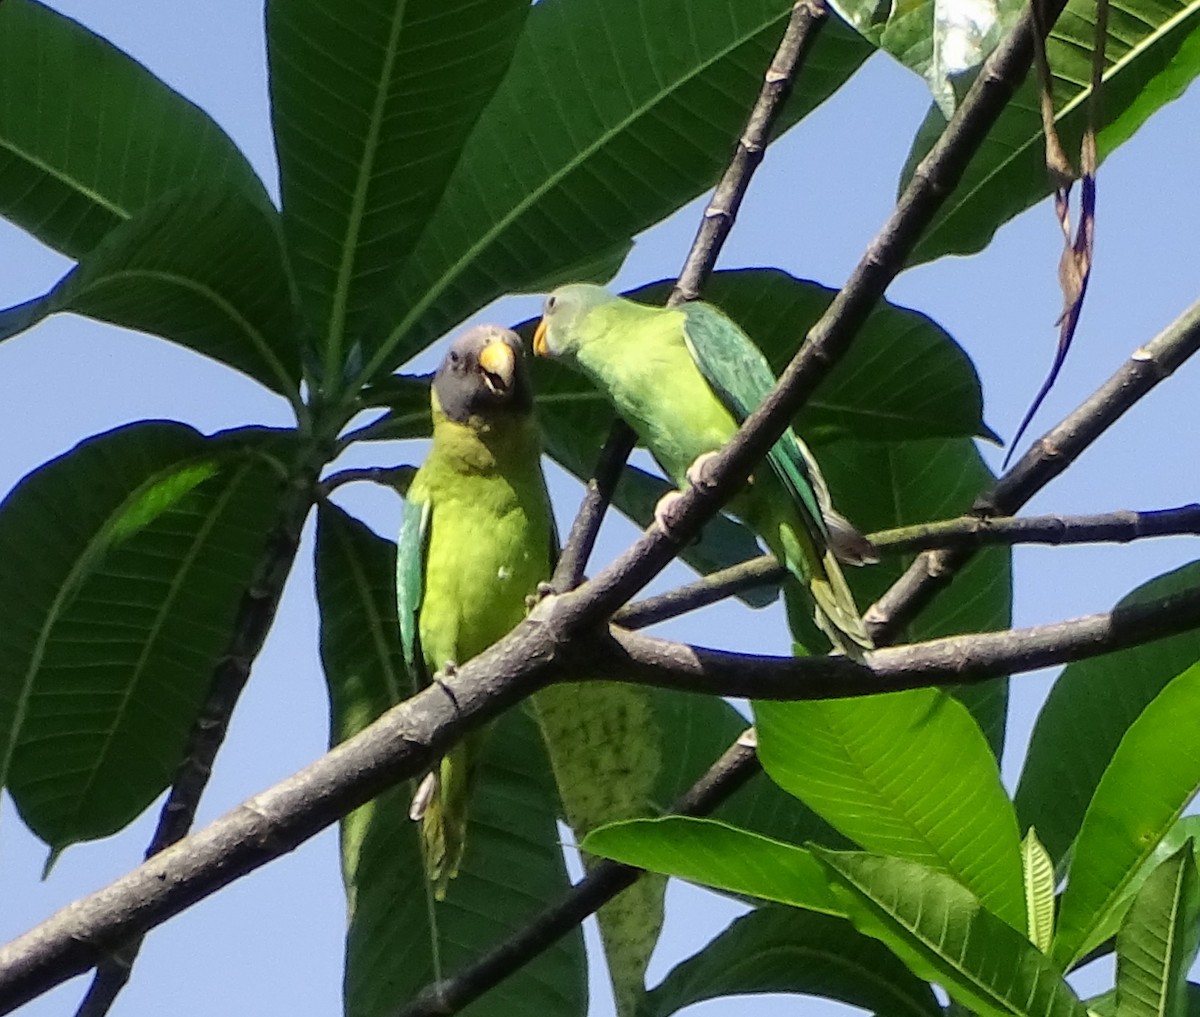 Plum-headed Parakeet - Enric Fontcuberta Trepat